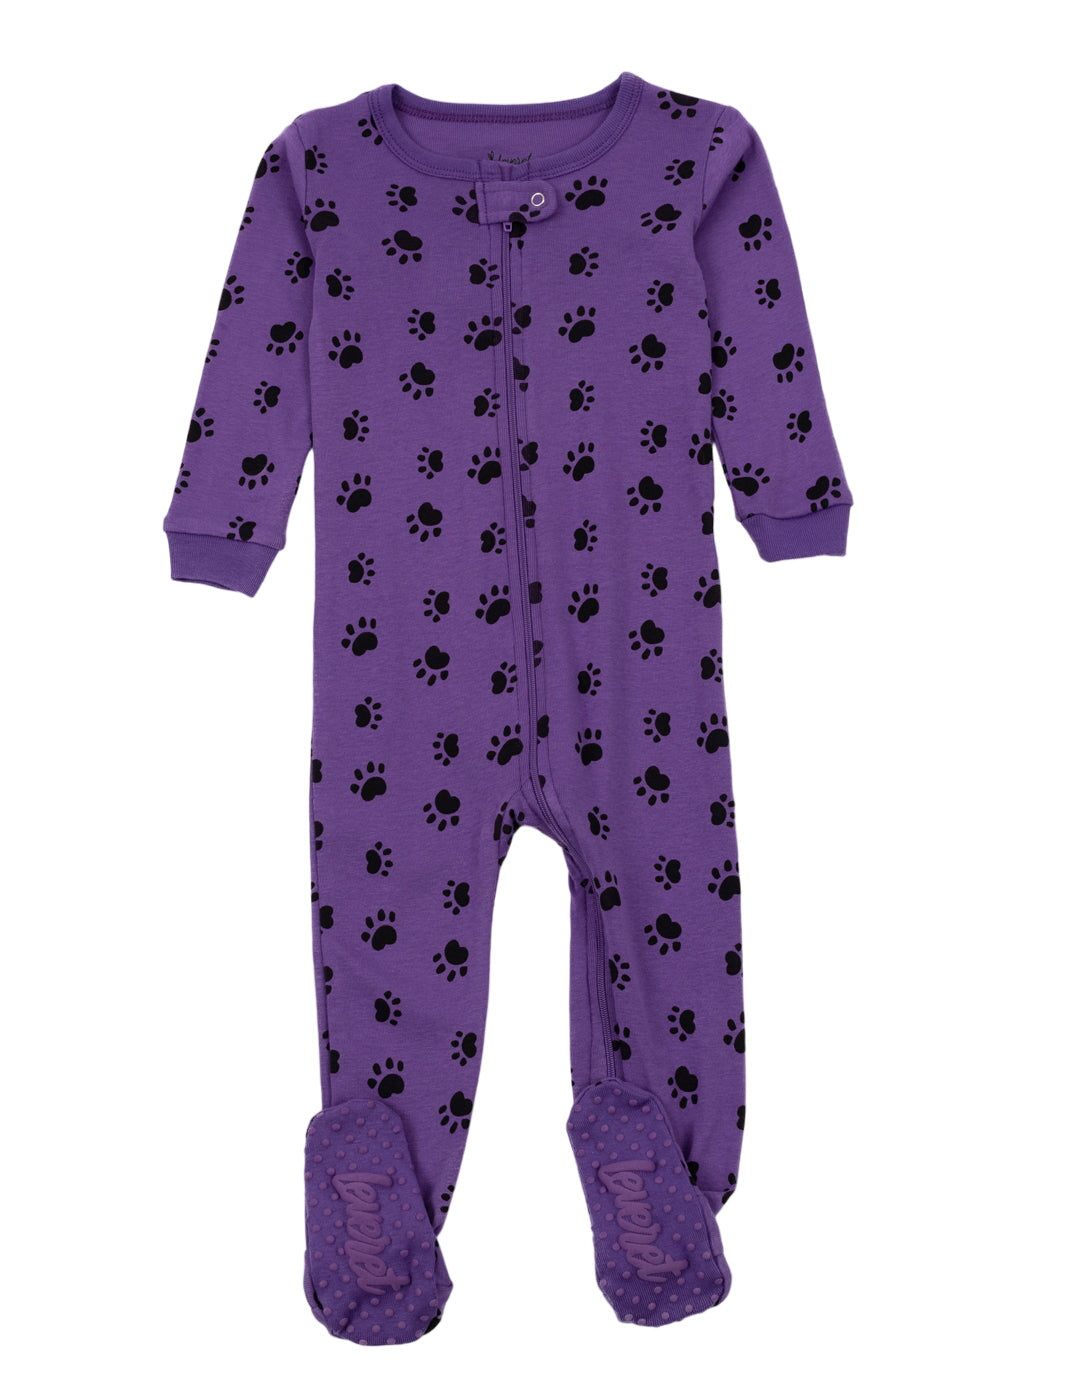 Baby Footed Paw Print Pajamas